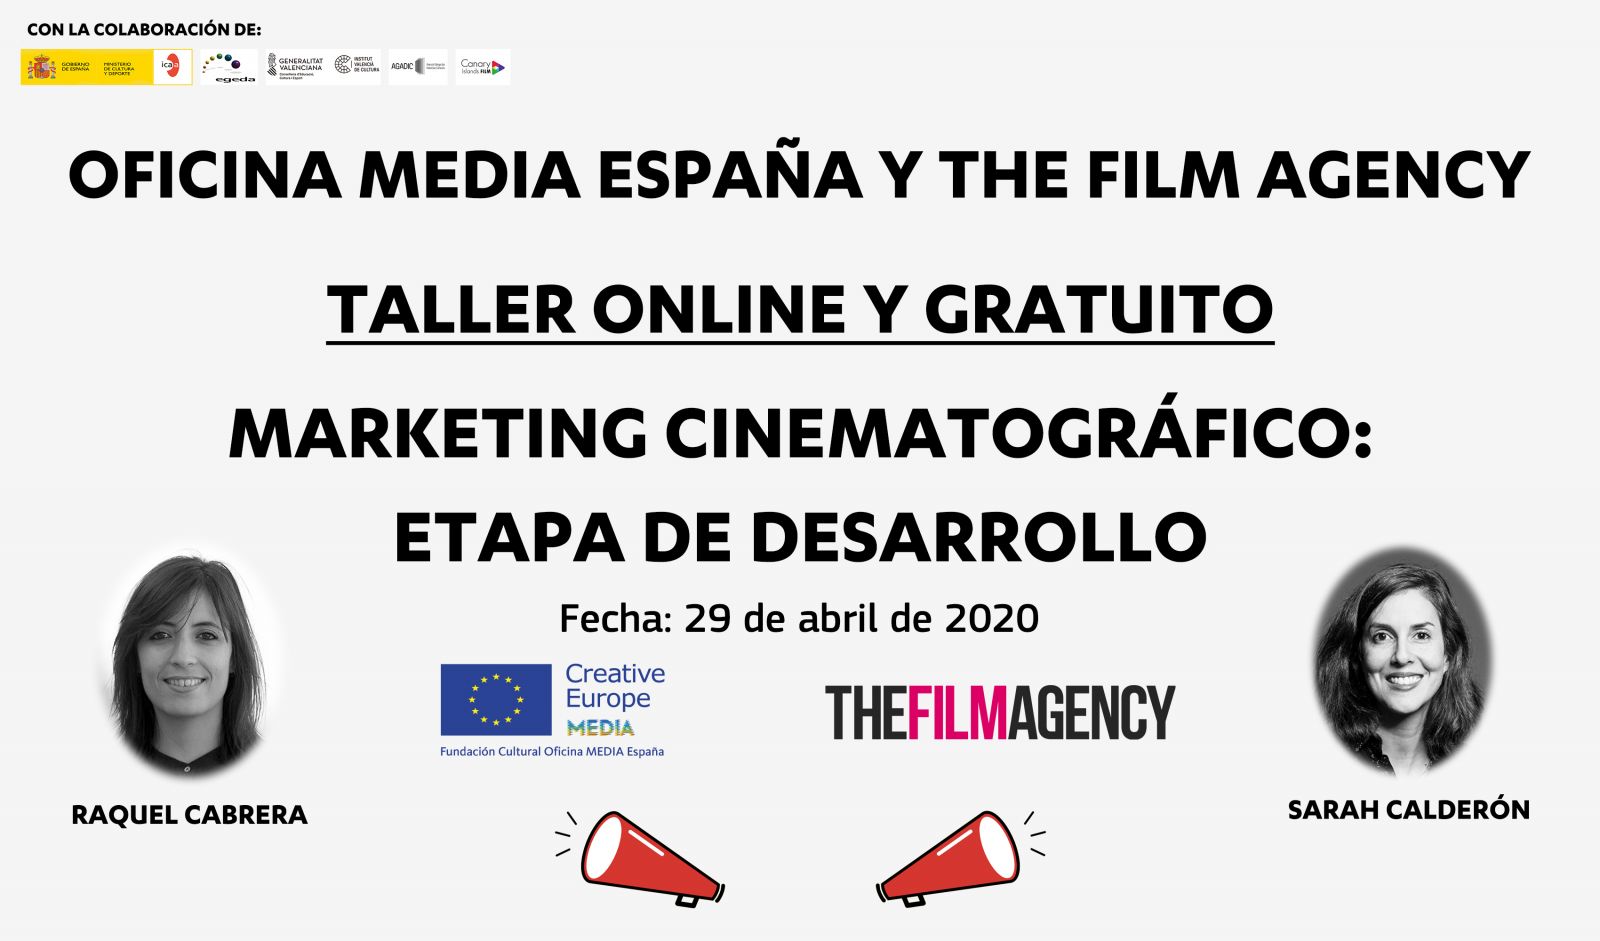 Taller online de marketing cinematográfico en etapa de desenvolvemento, organizado por MEDIA e The Film Agency: 29 de abril de 2020